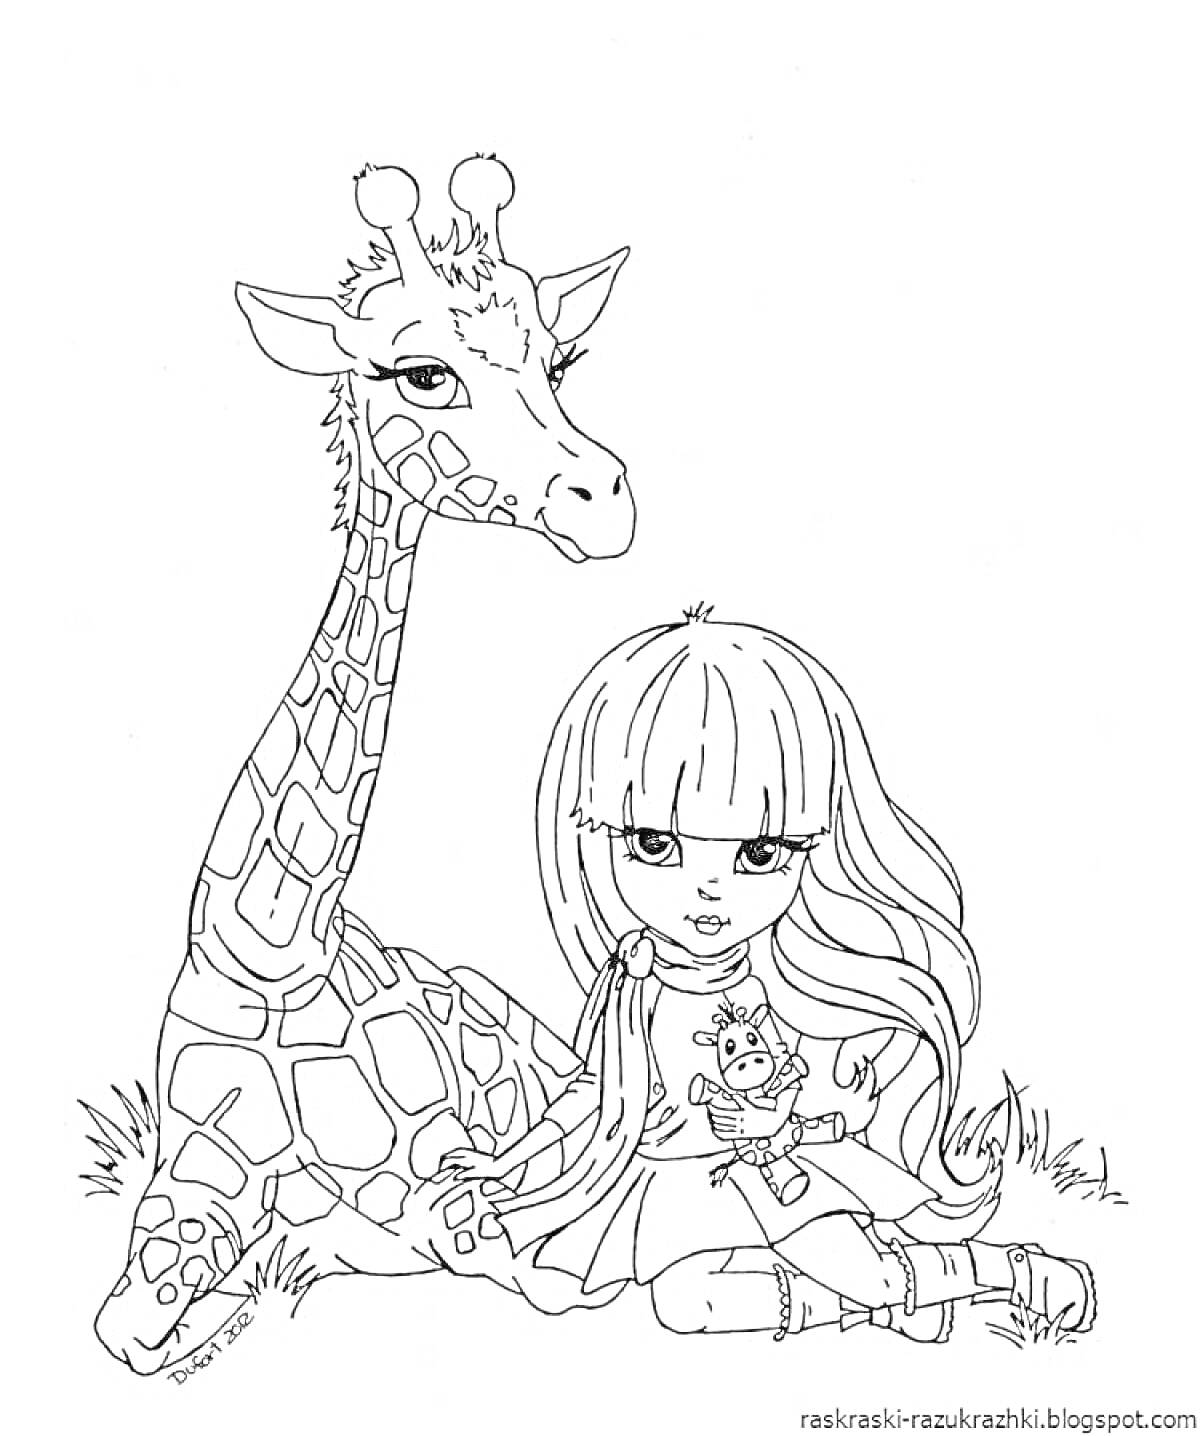 Раскраска Девочка с длинными волосами и челкой, сидящая рядом с жирафом и прижимающая к себе маленького енота